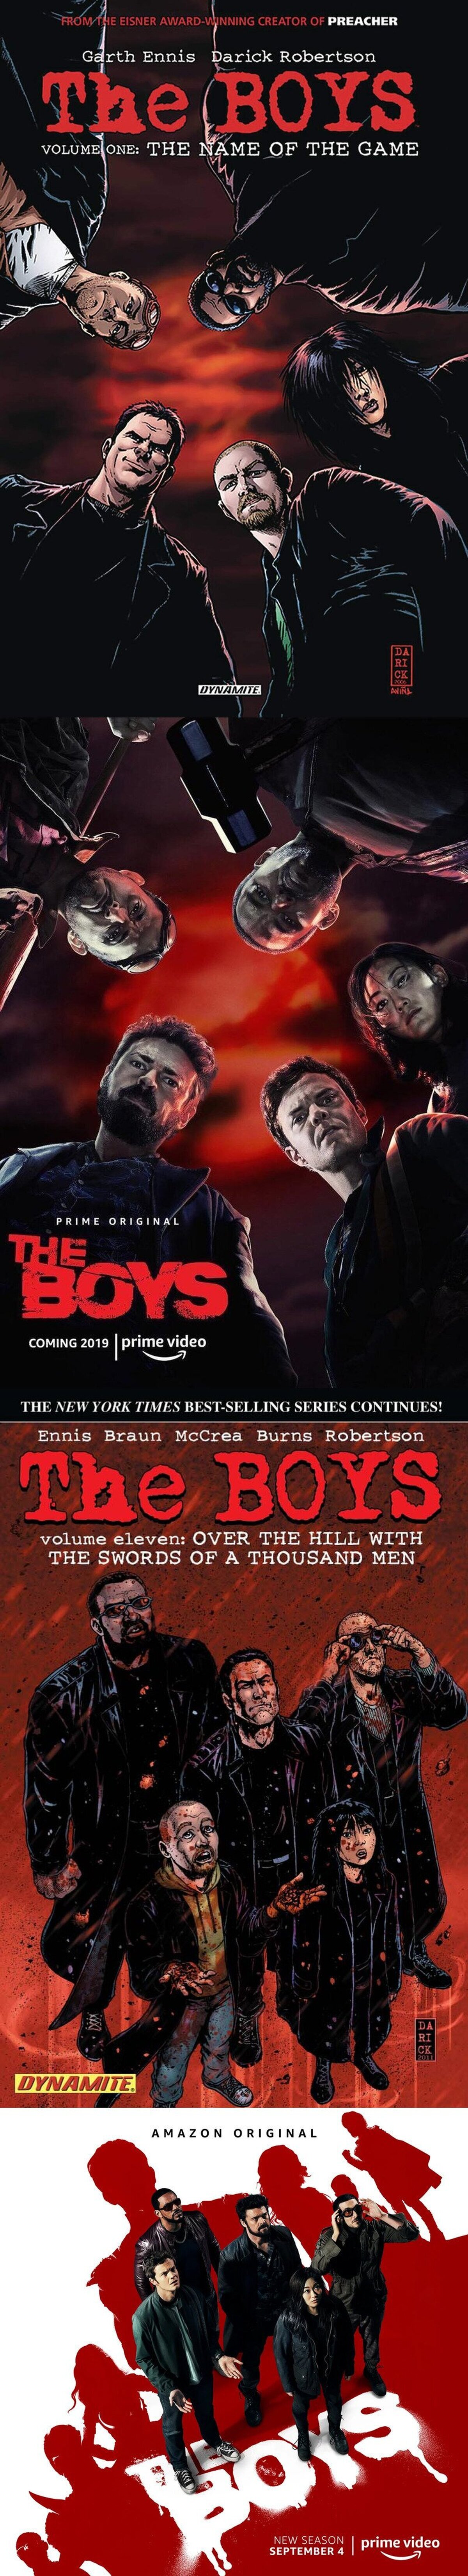 Amo que los posters de la serie de The Boys sean recreaciones de las tapas de sus cómic